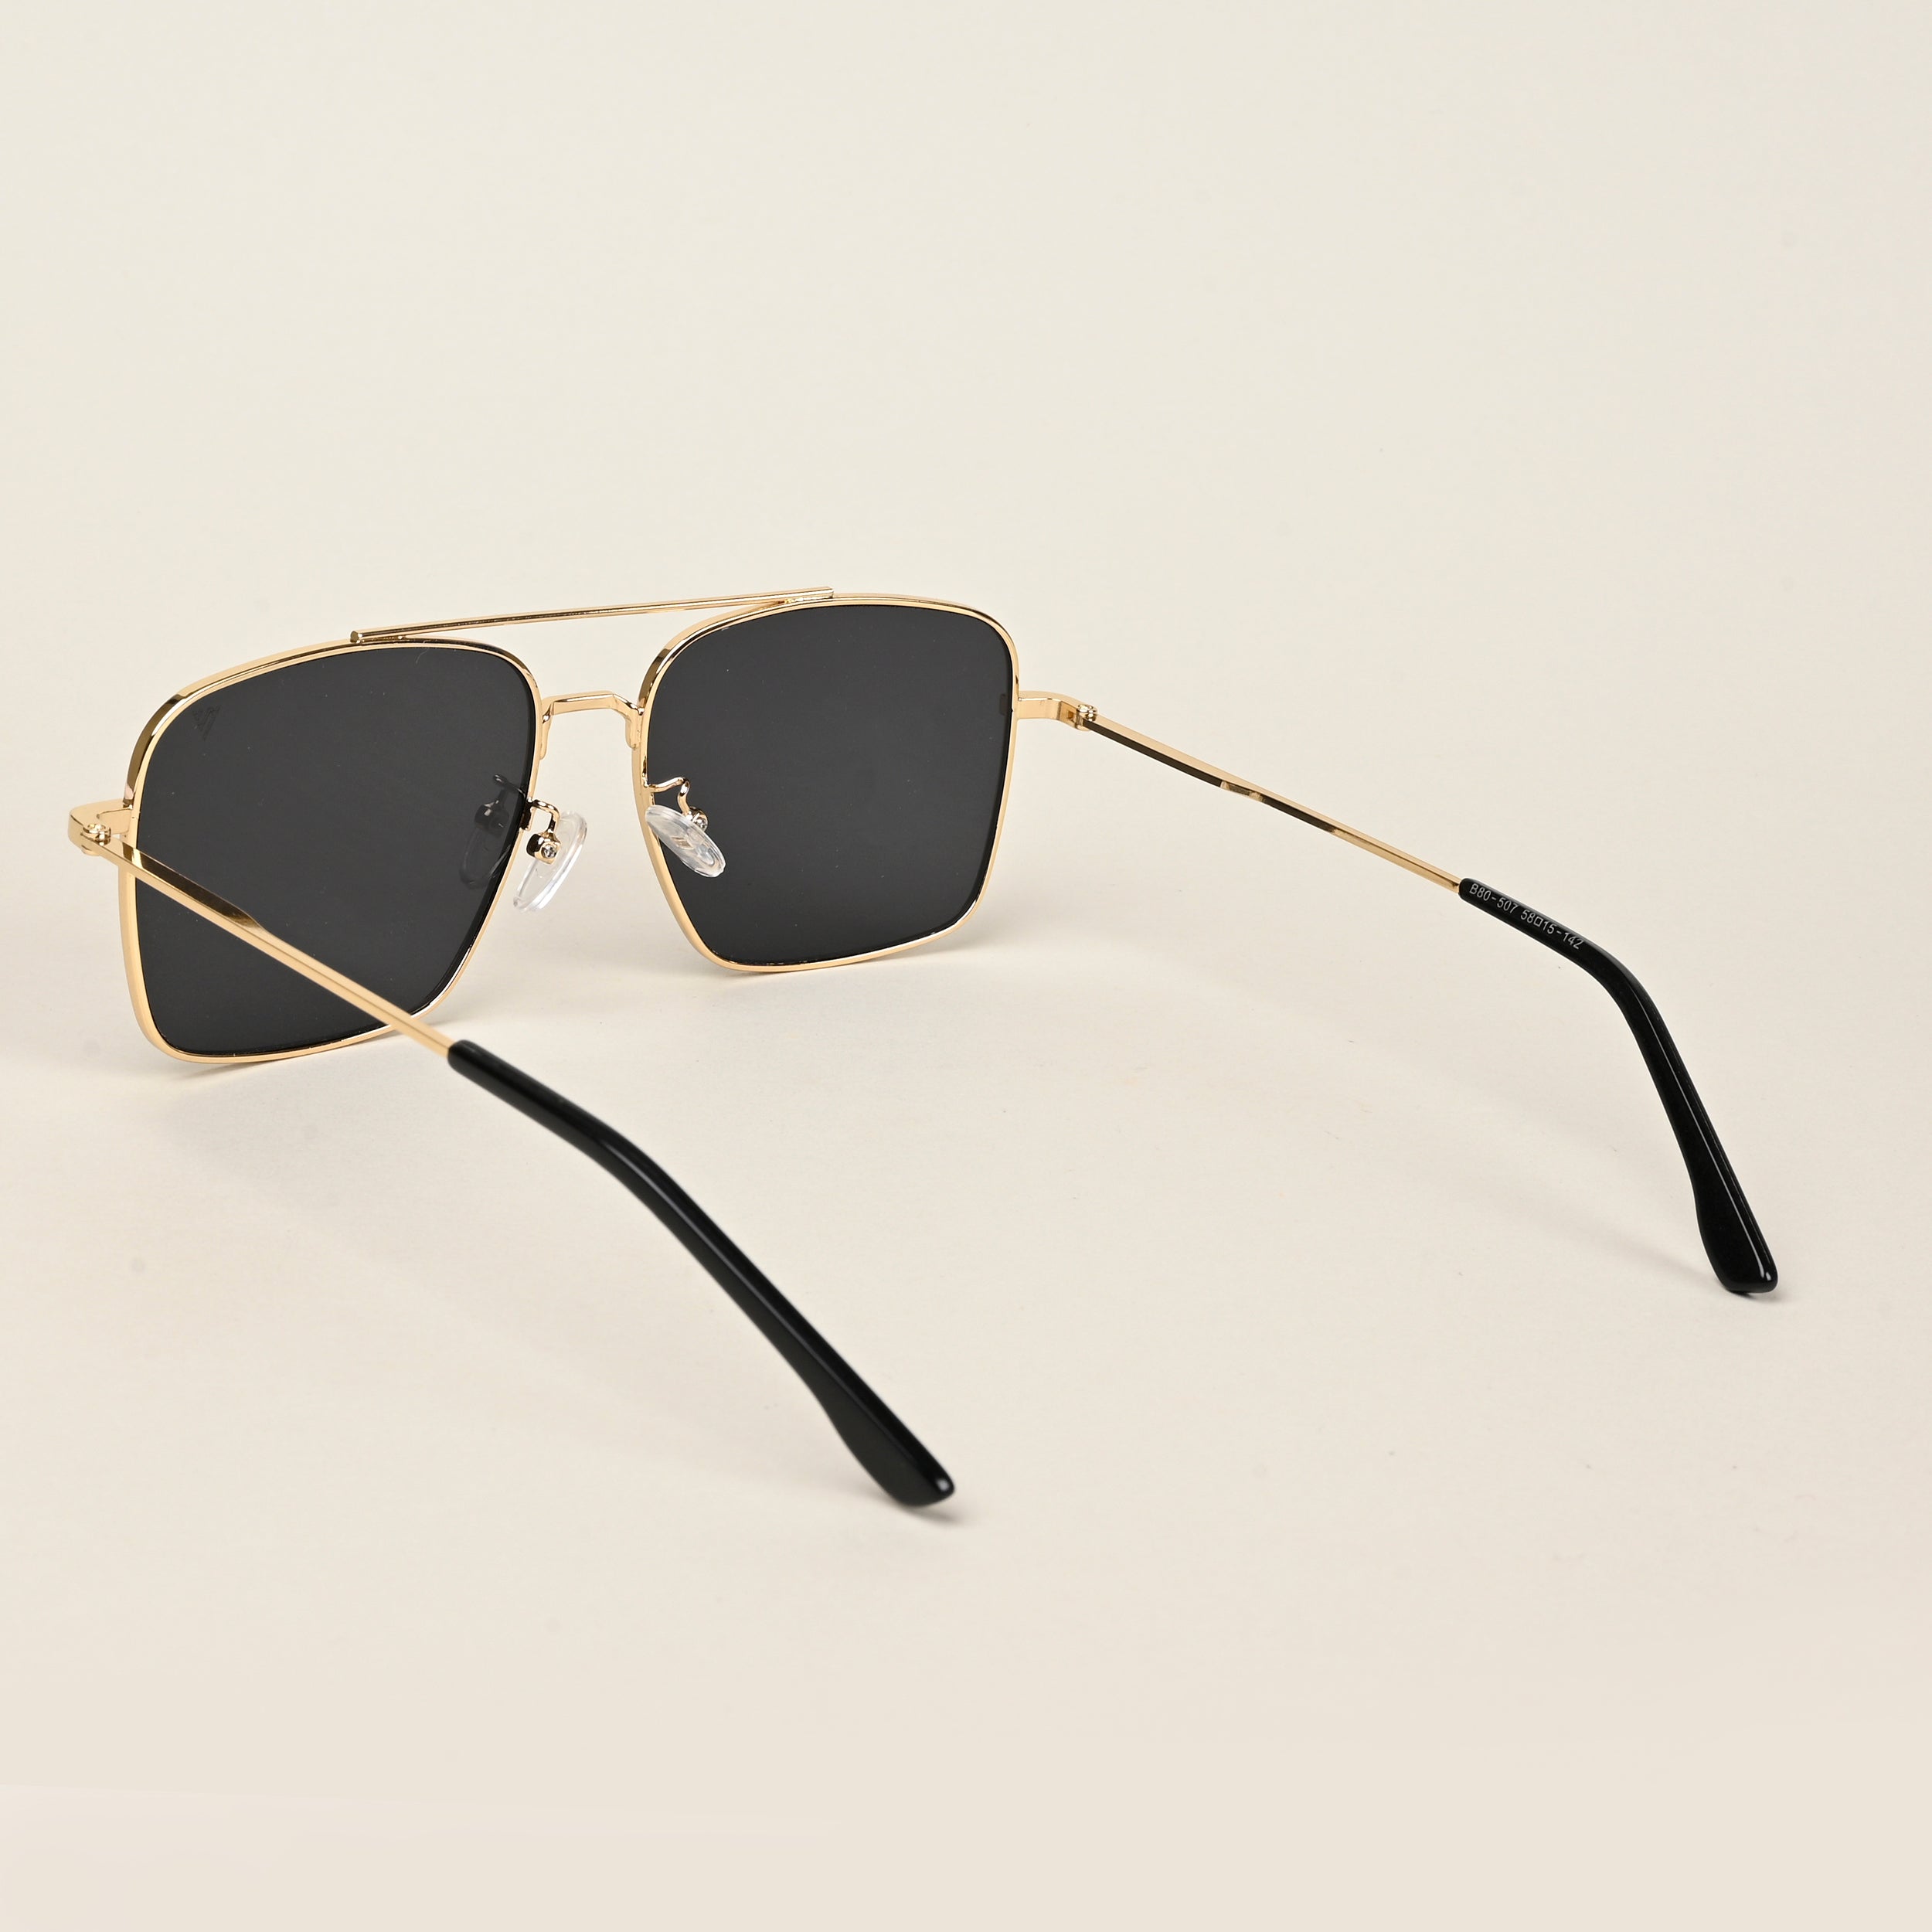 Voyage Aviator Sunglasses for Men & Women (Black Lens | Golden Frame - MG5178)